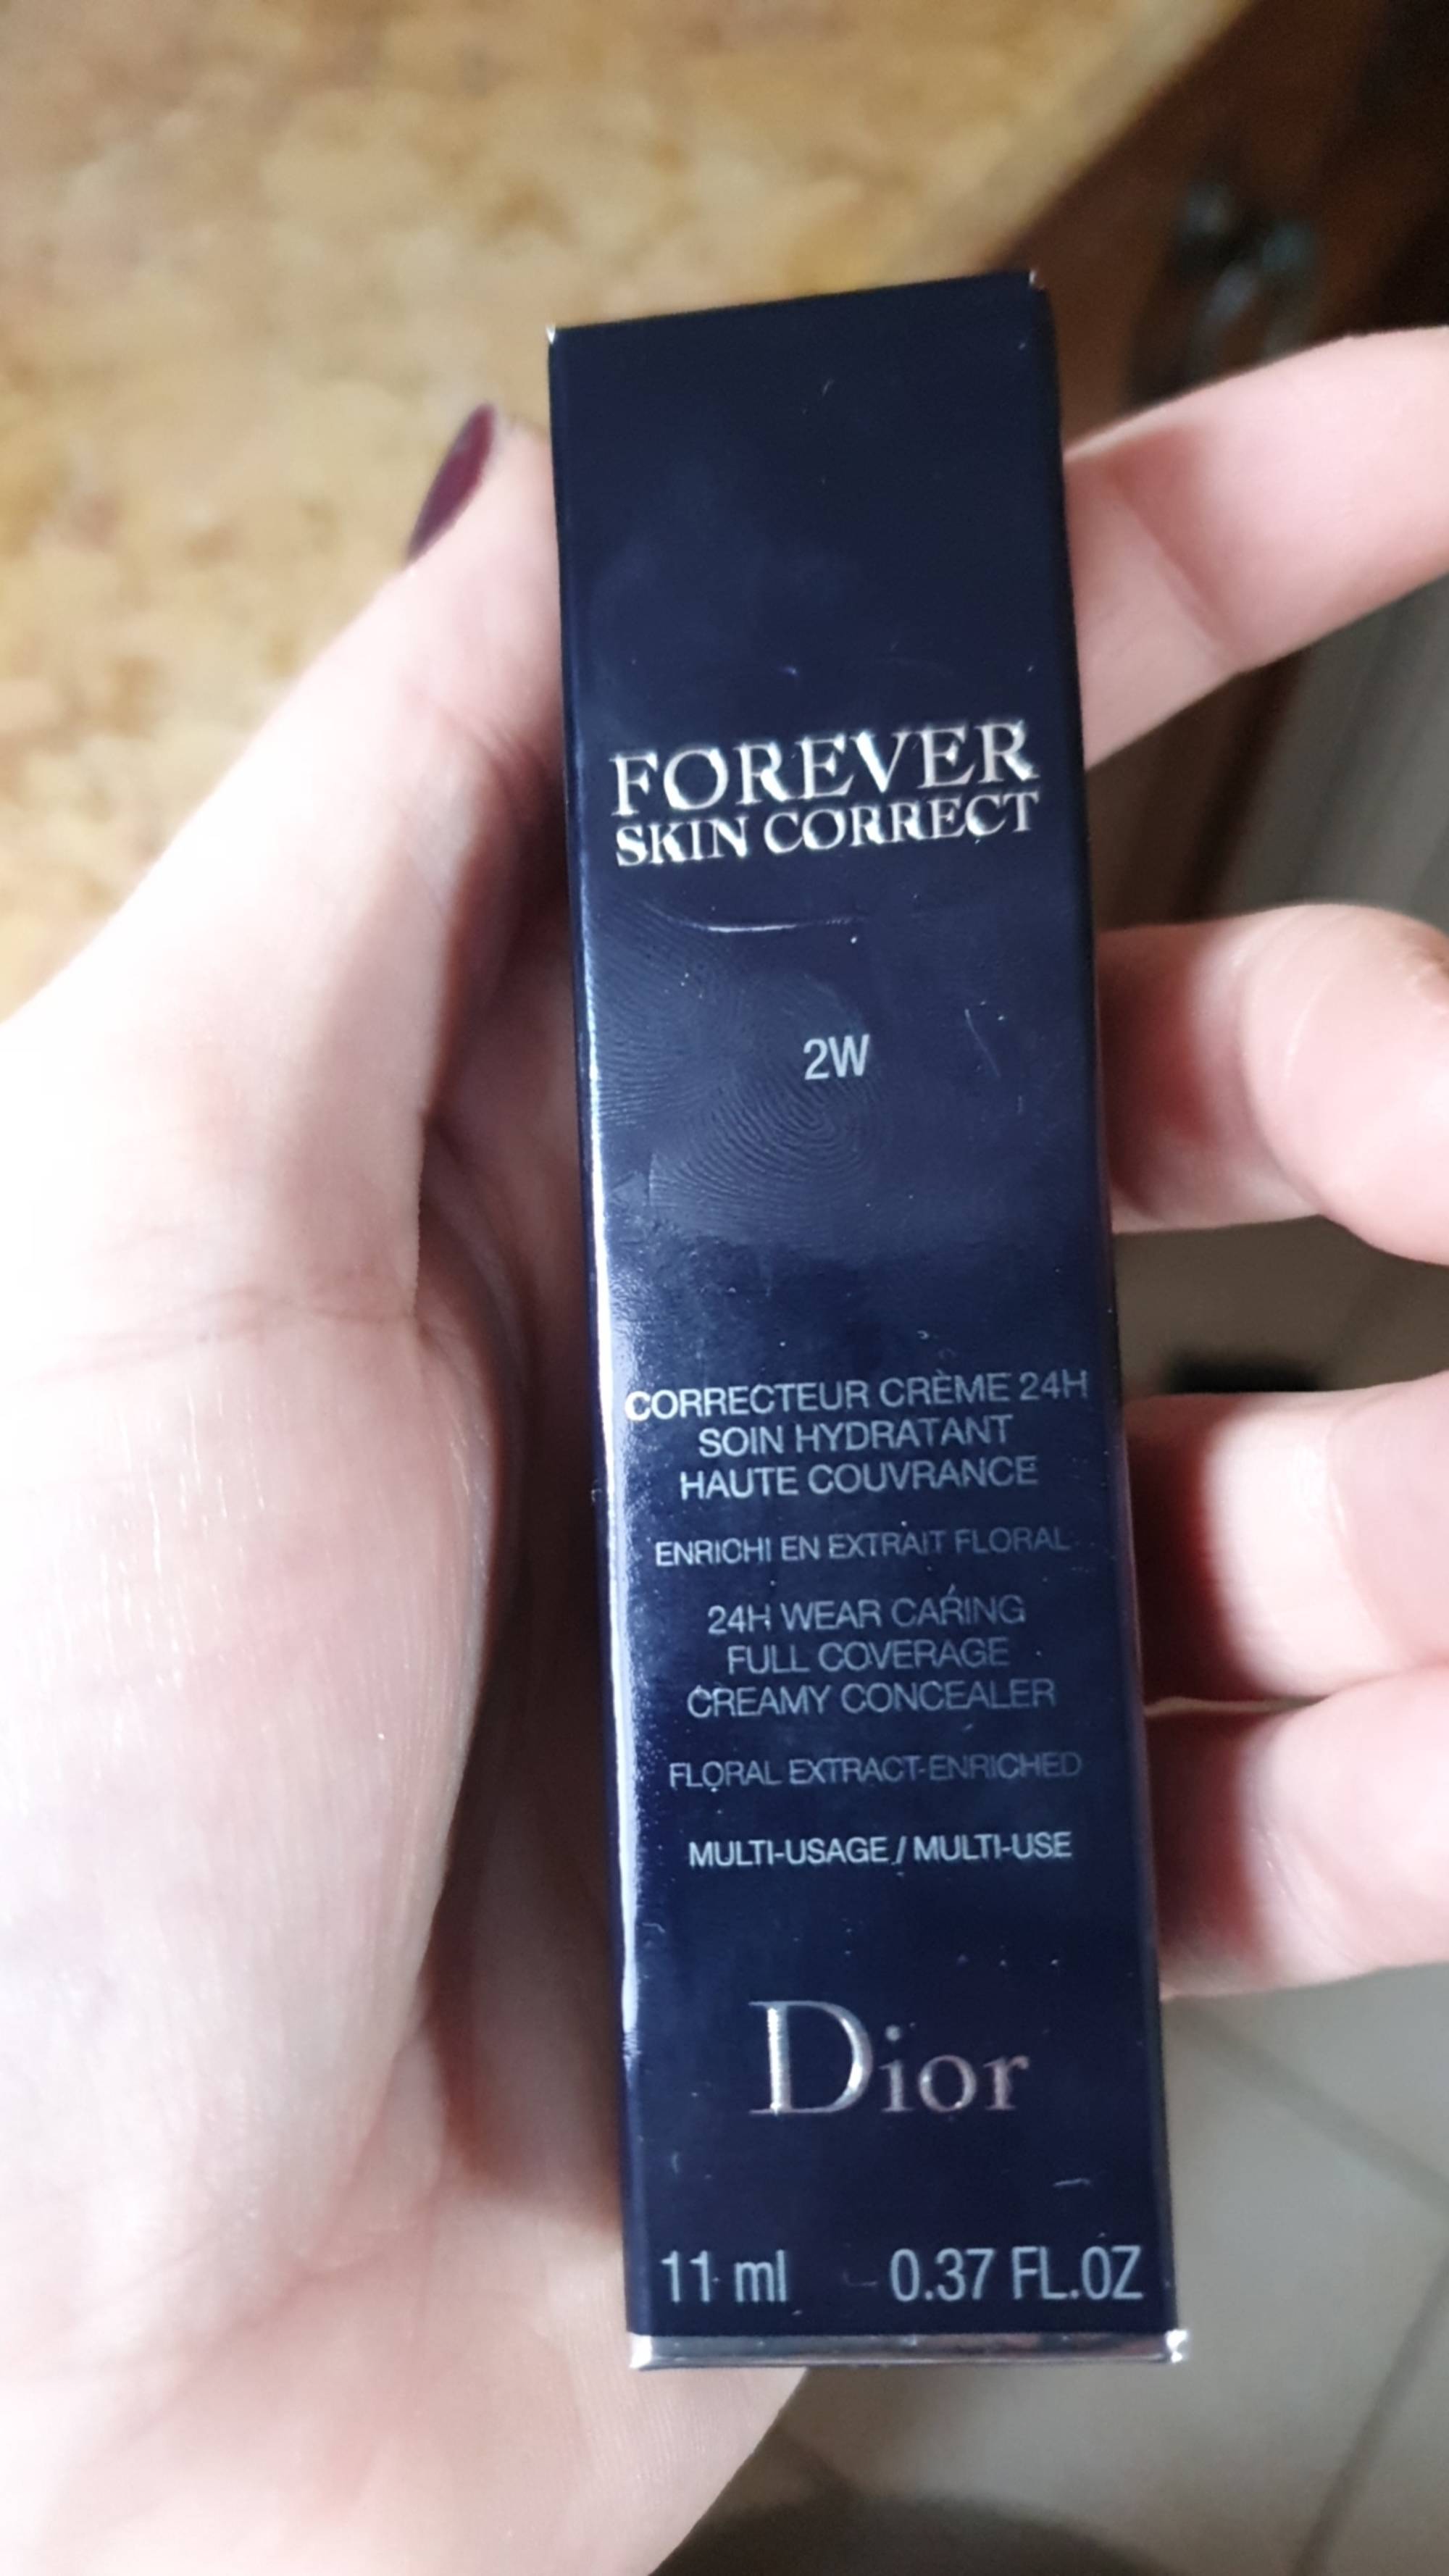 DIOR - Forever skin correct - Correcteur crème 24h